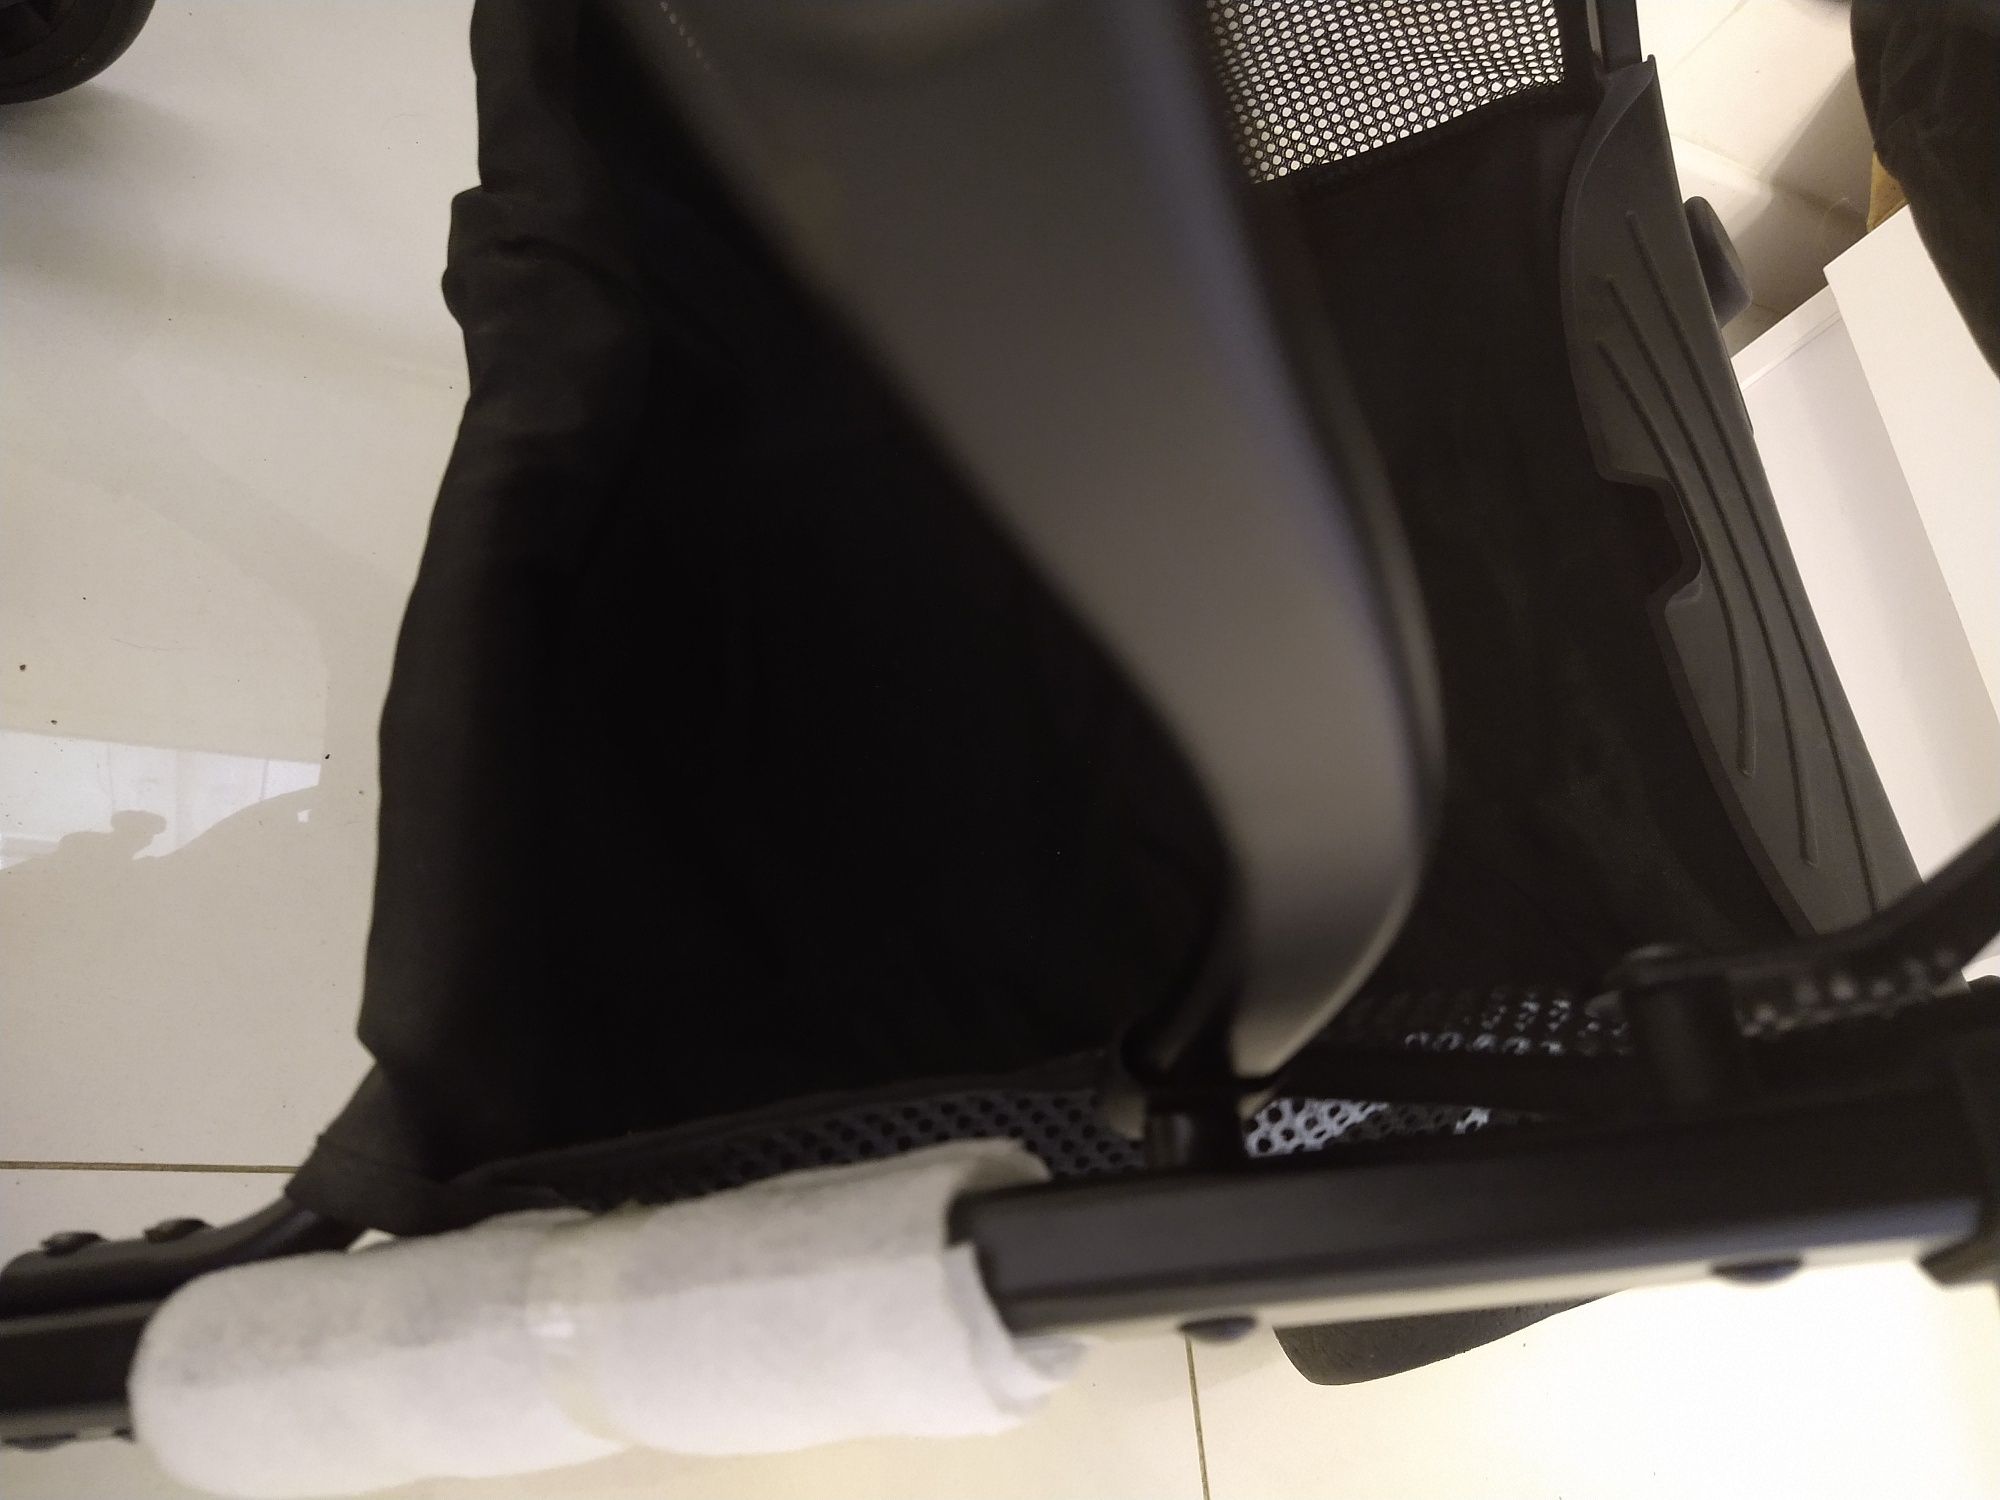 Wózek spacerowy Lorelli Fiorano kompaktowy lekki, składa się w walizkę